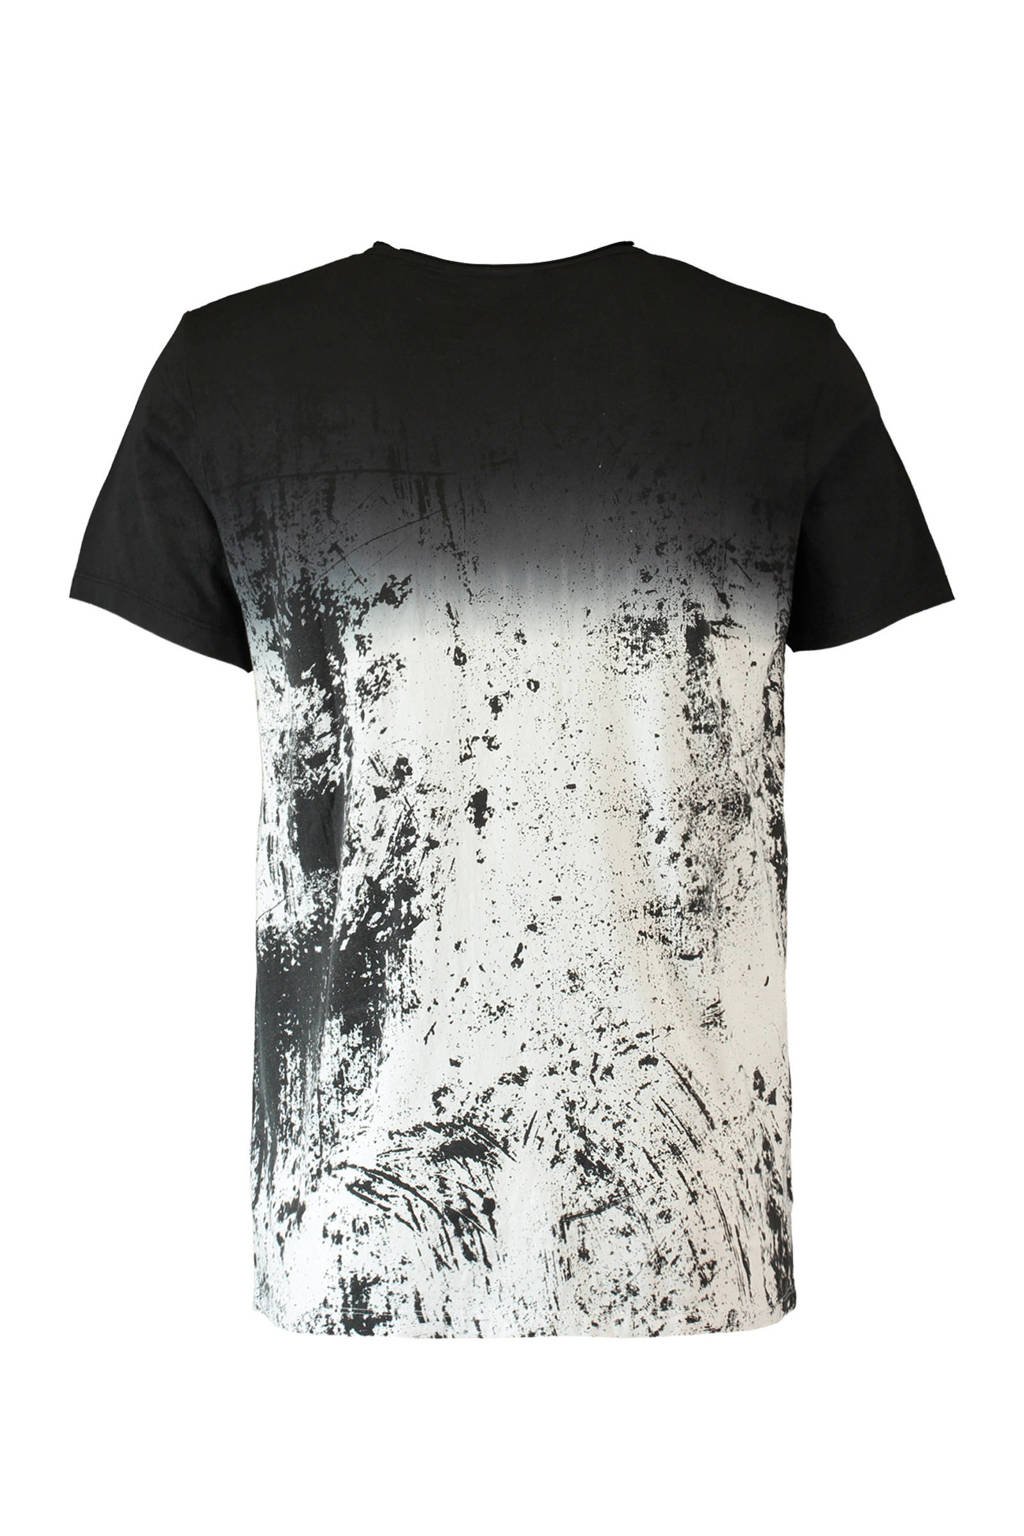 Zelfrespect bevroren Implicaties CoolCat T-shirt | wehkamp